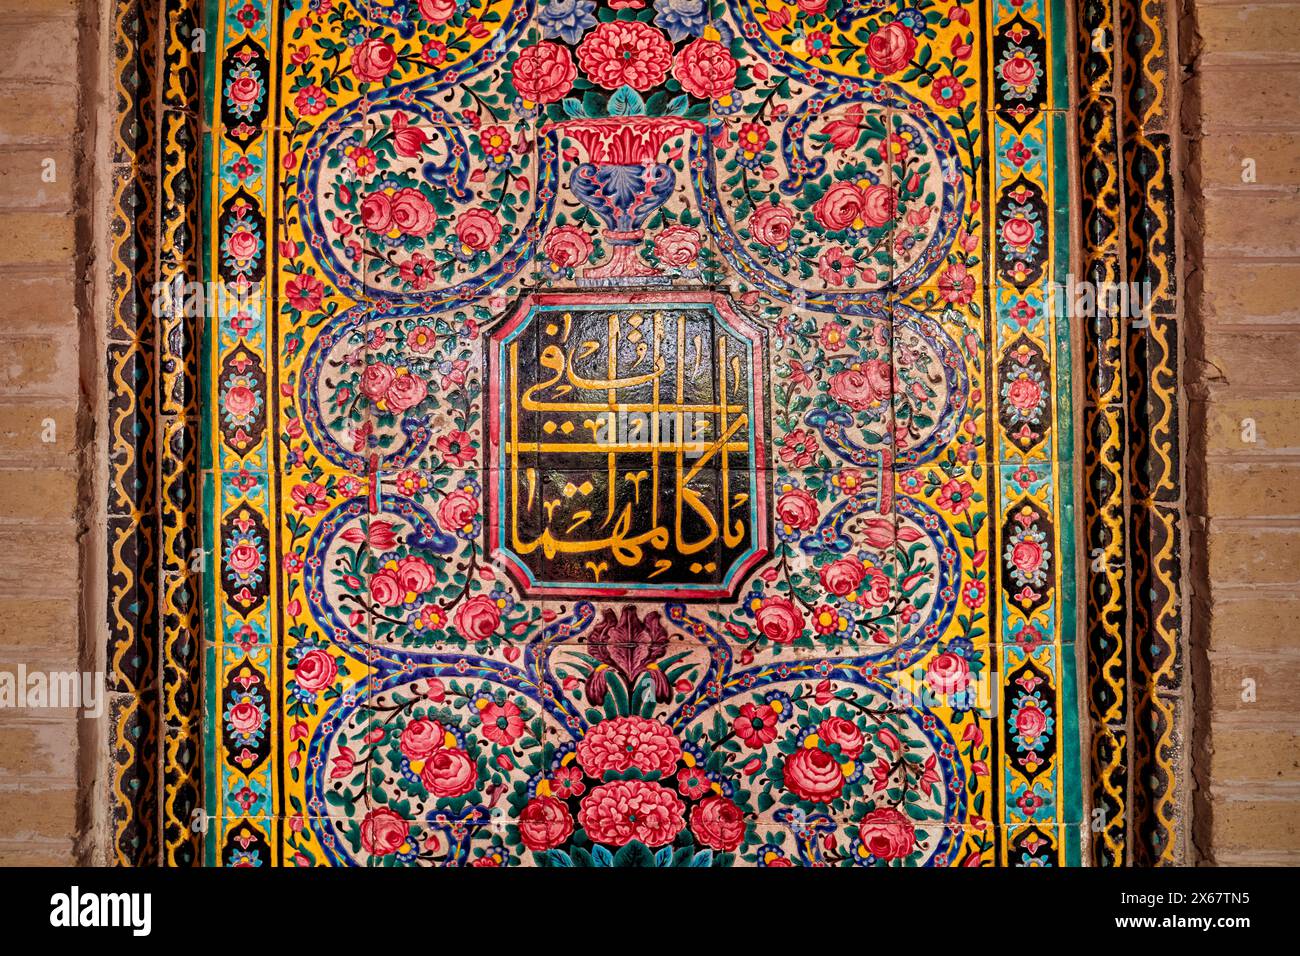 Aufwändige mehrfarbige Fliesen in der Nasir al-Mulk Moschee aus dem 19. Jahrhundert, auch bekannt als die Rosa Moschee. Shiraz, Iran. Stockfoto